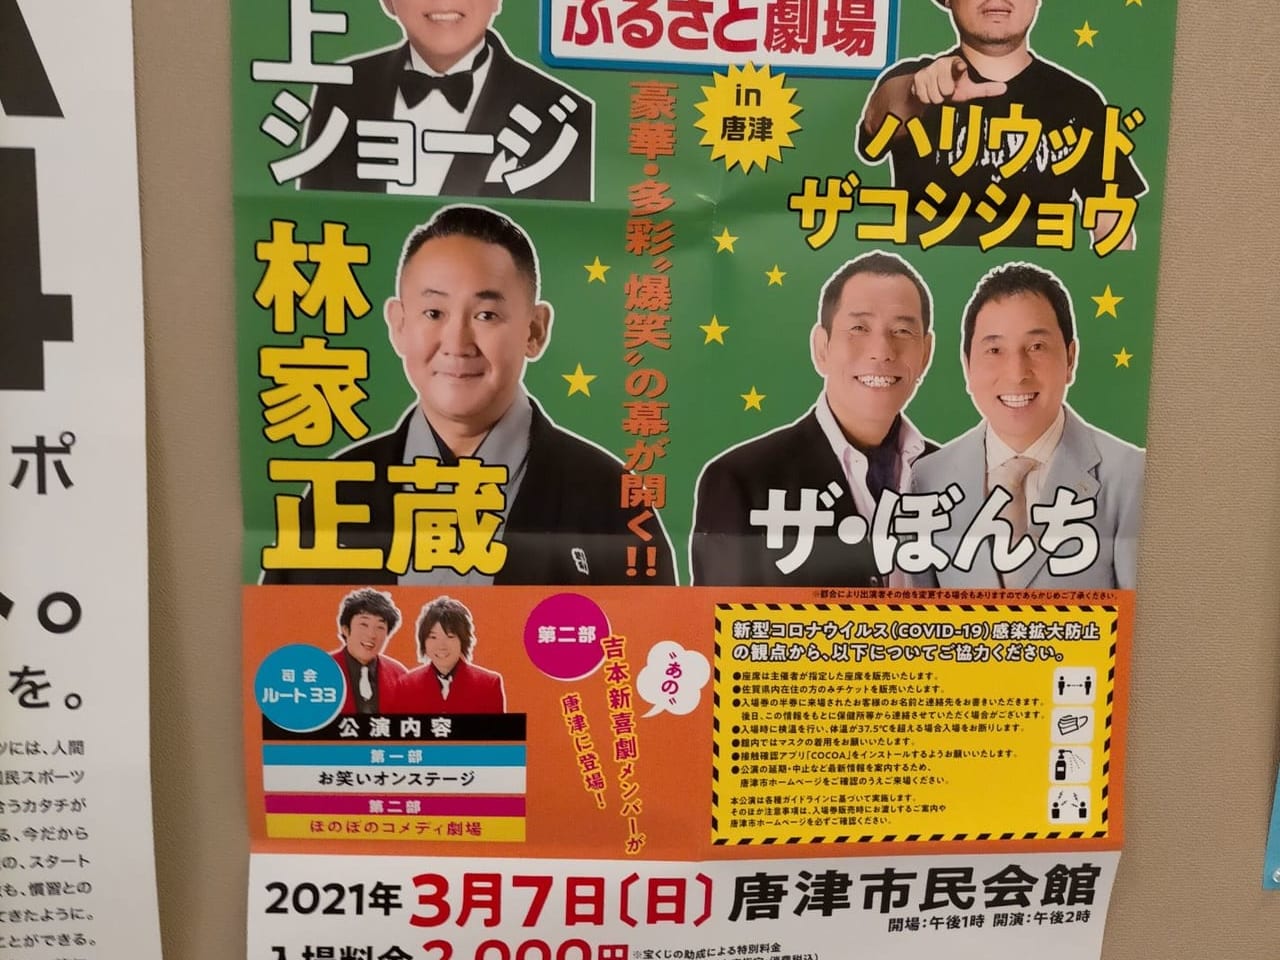 「宝くじふるさとワクワク劇場in唐津」のポスター